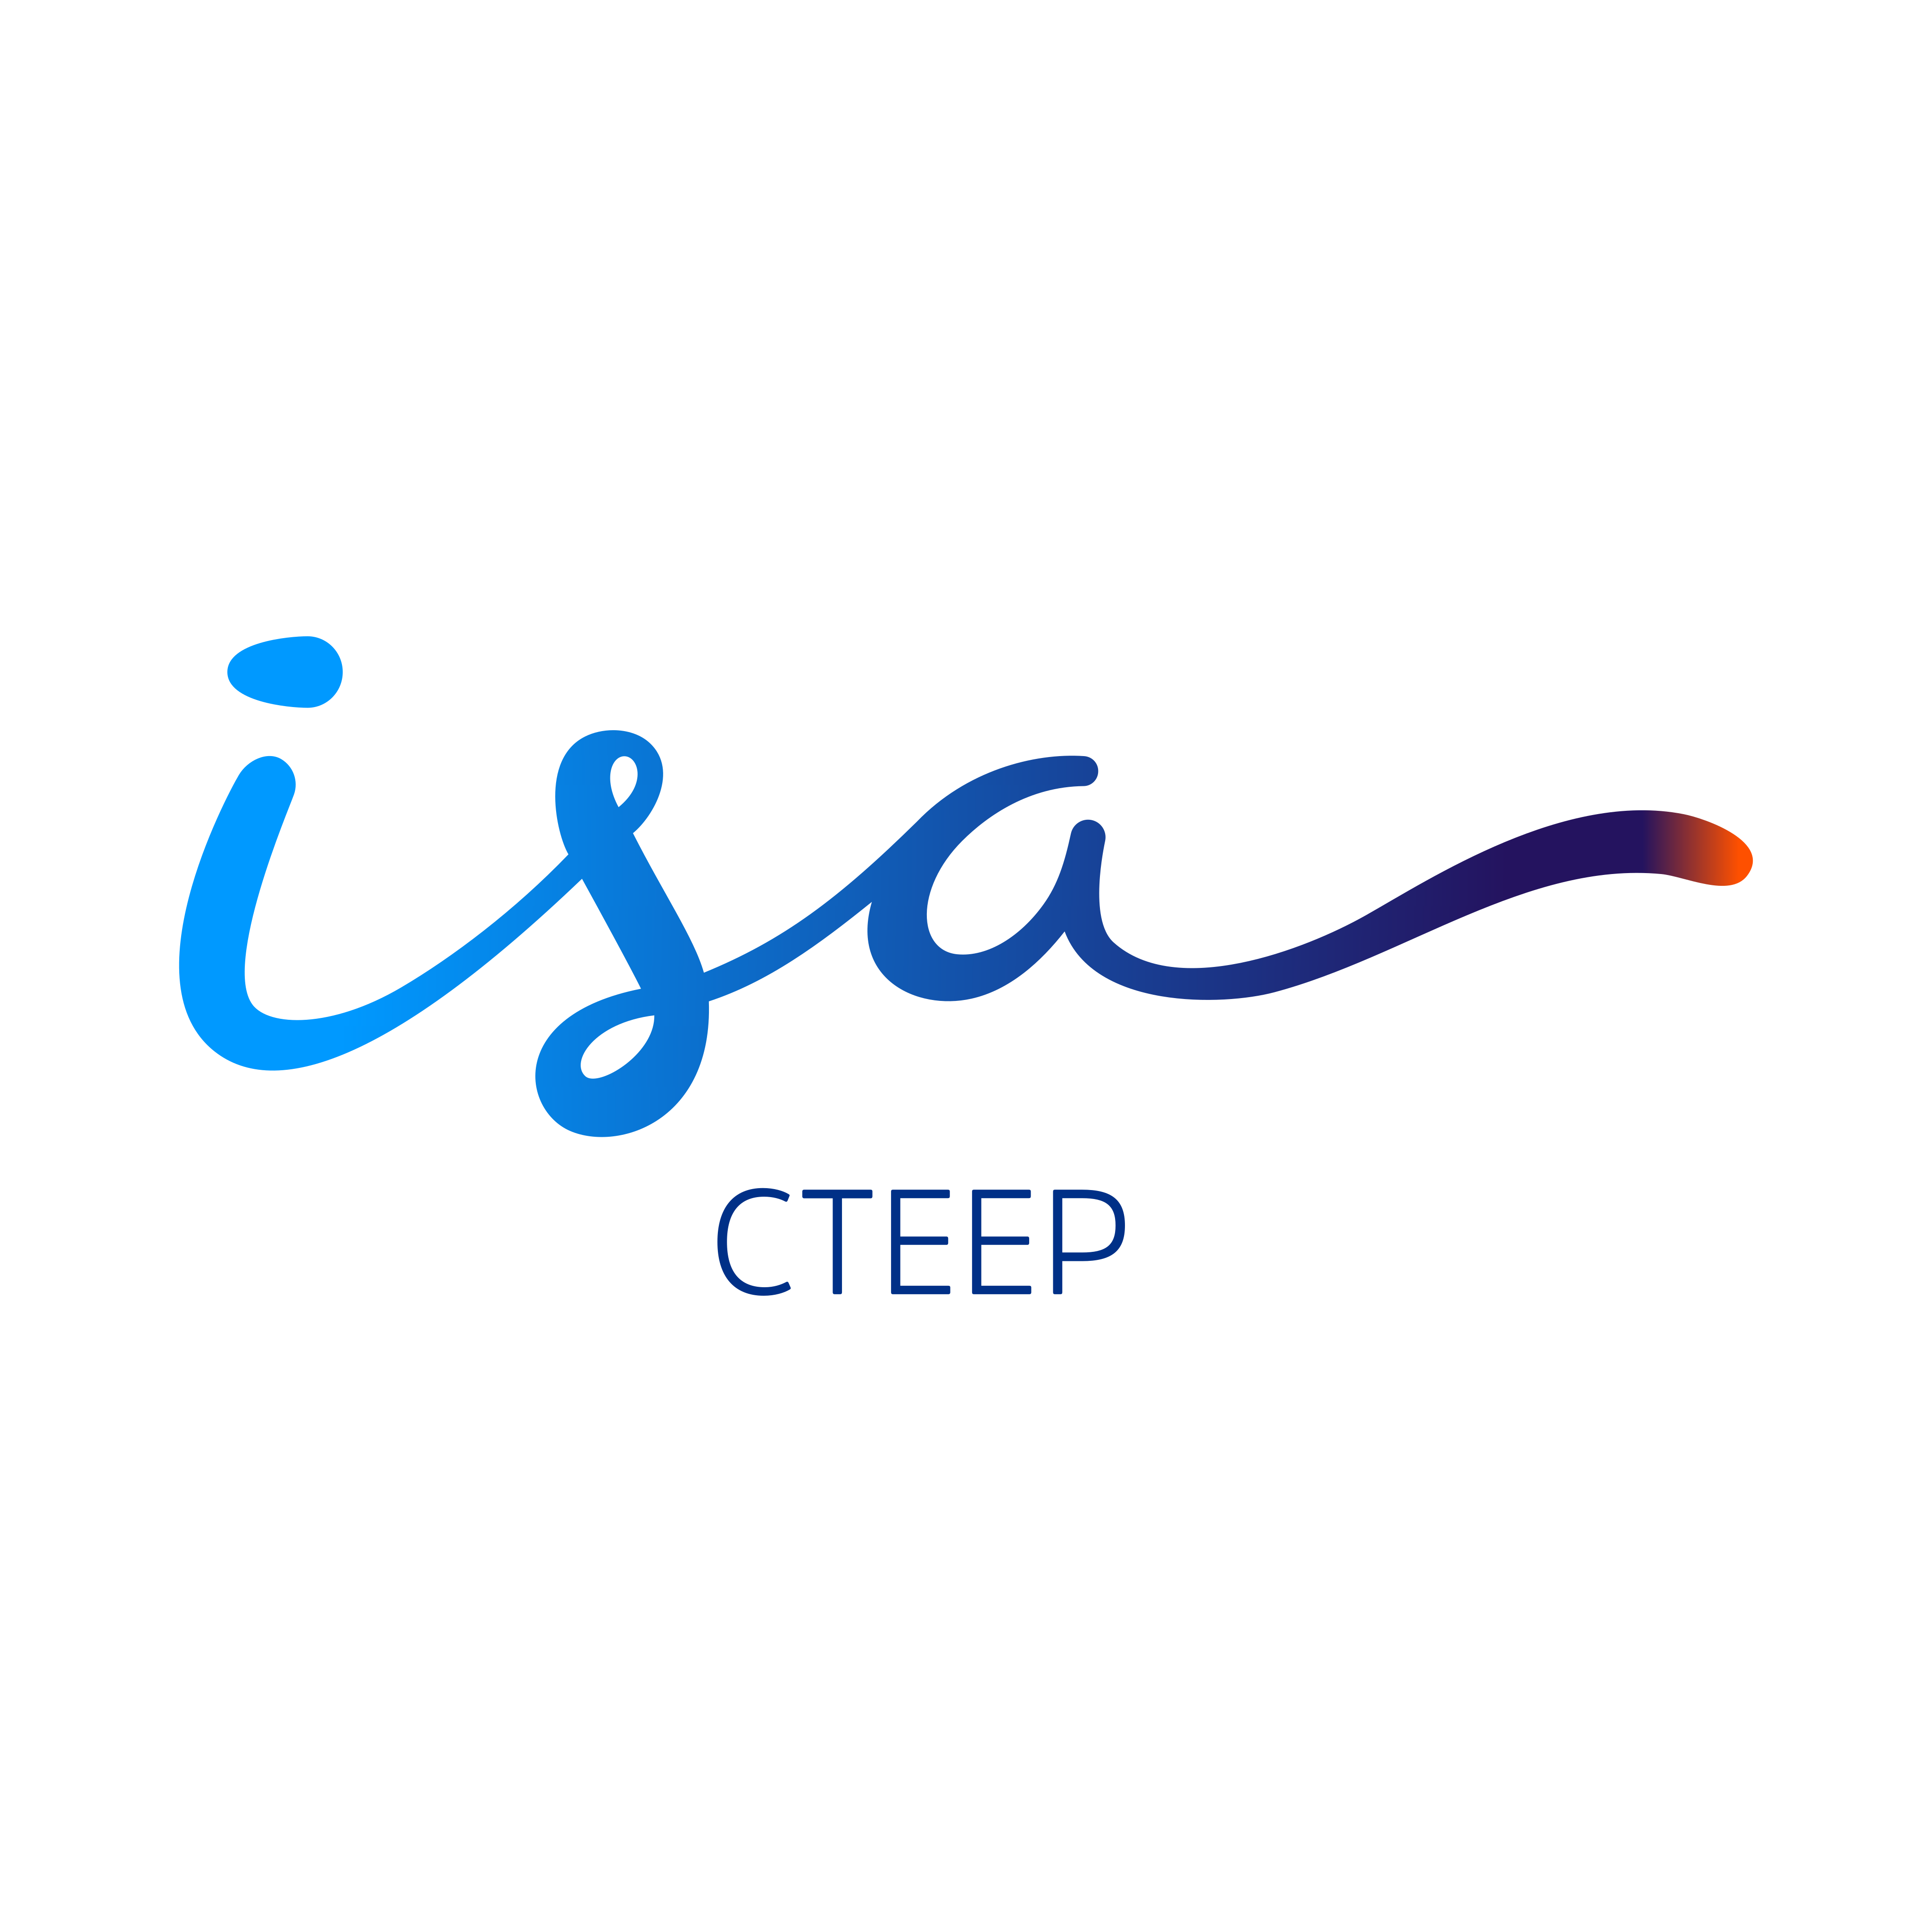 ISA CTEEP Logo PNG.